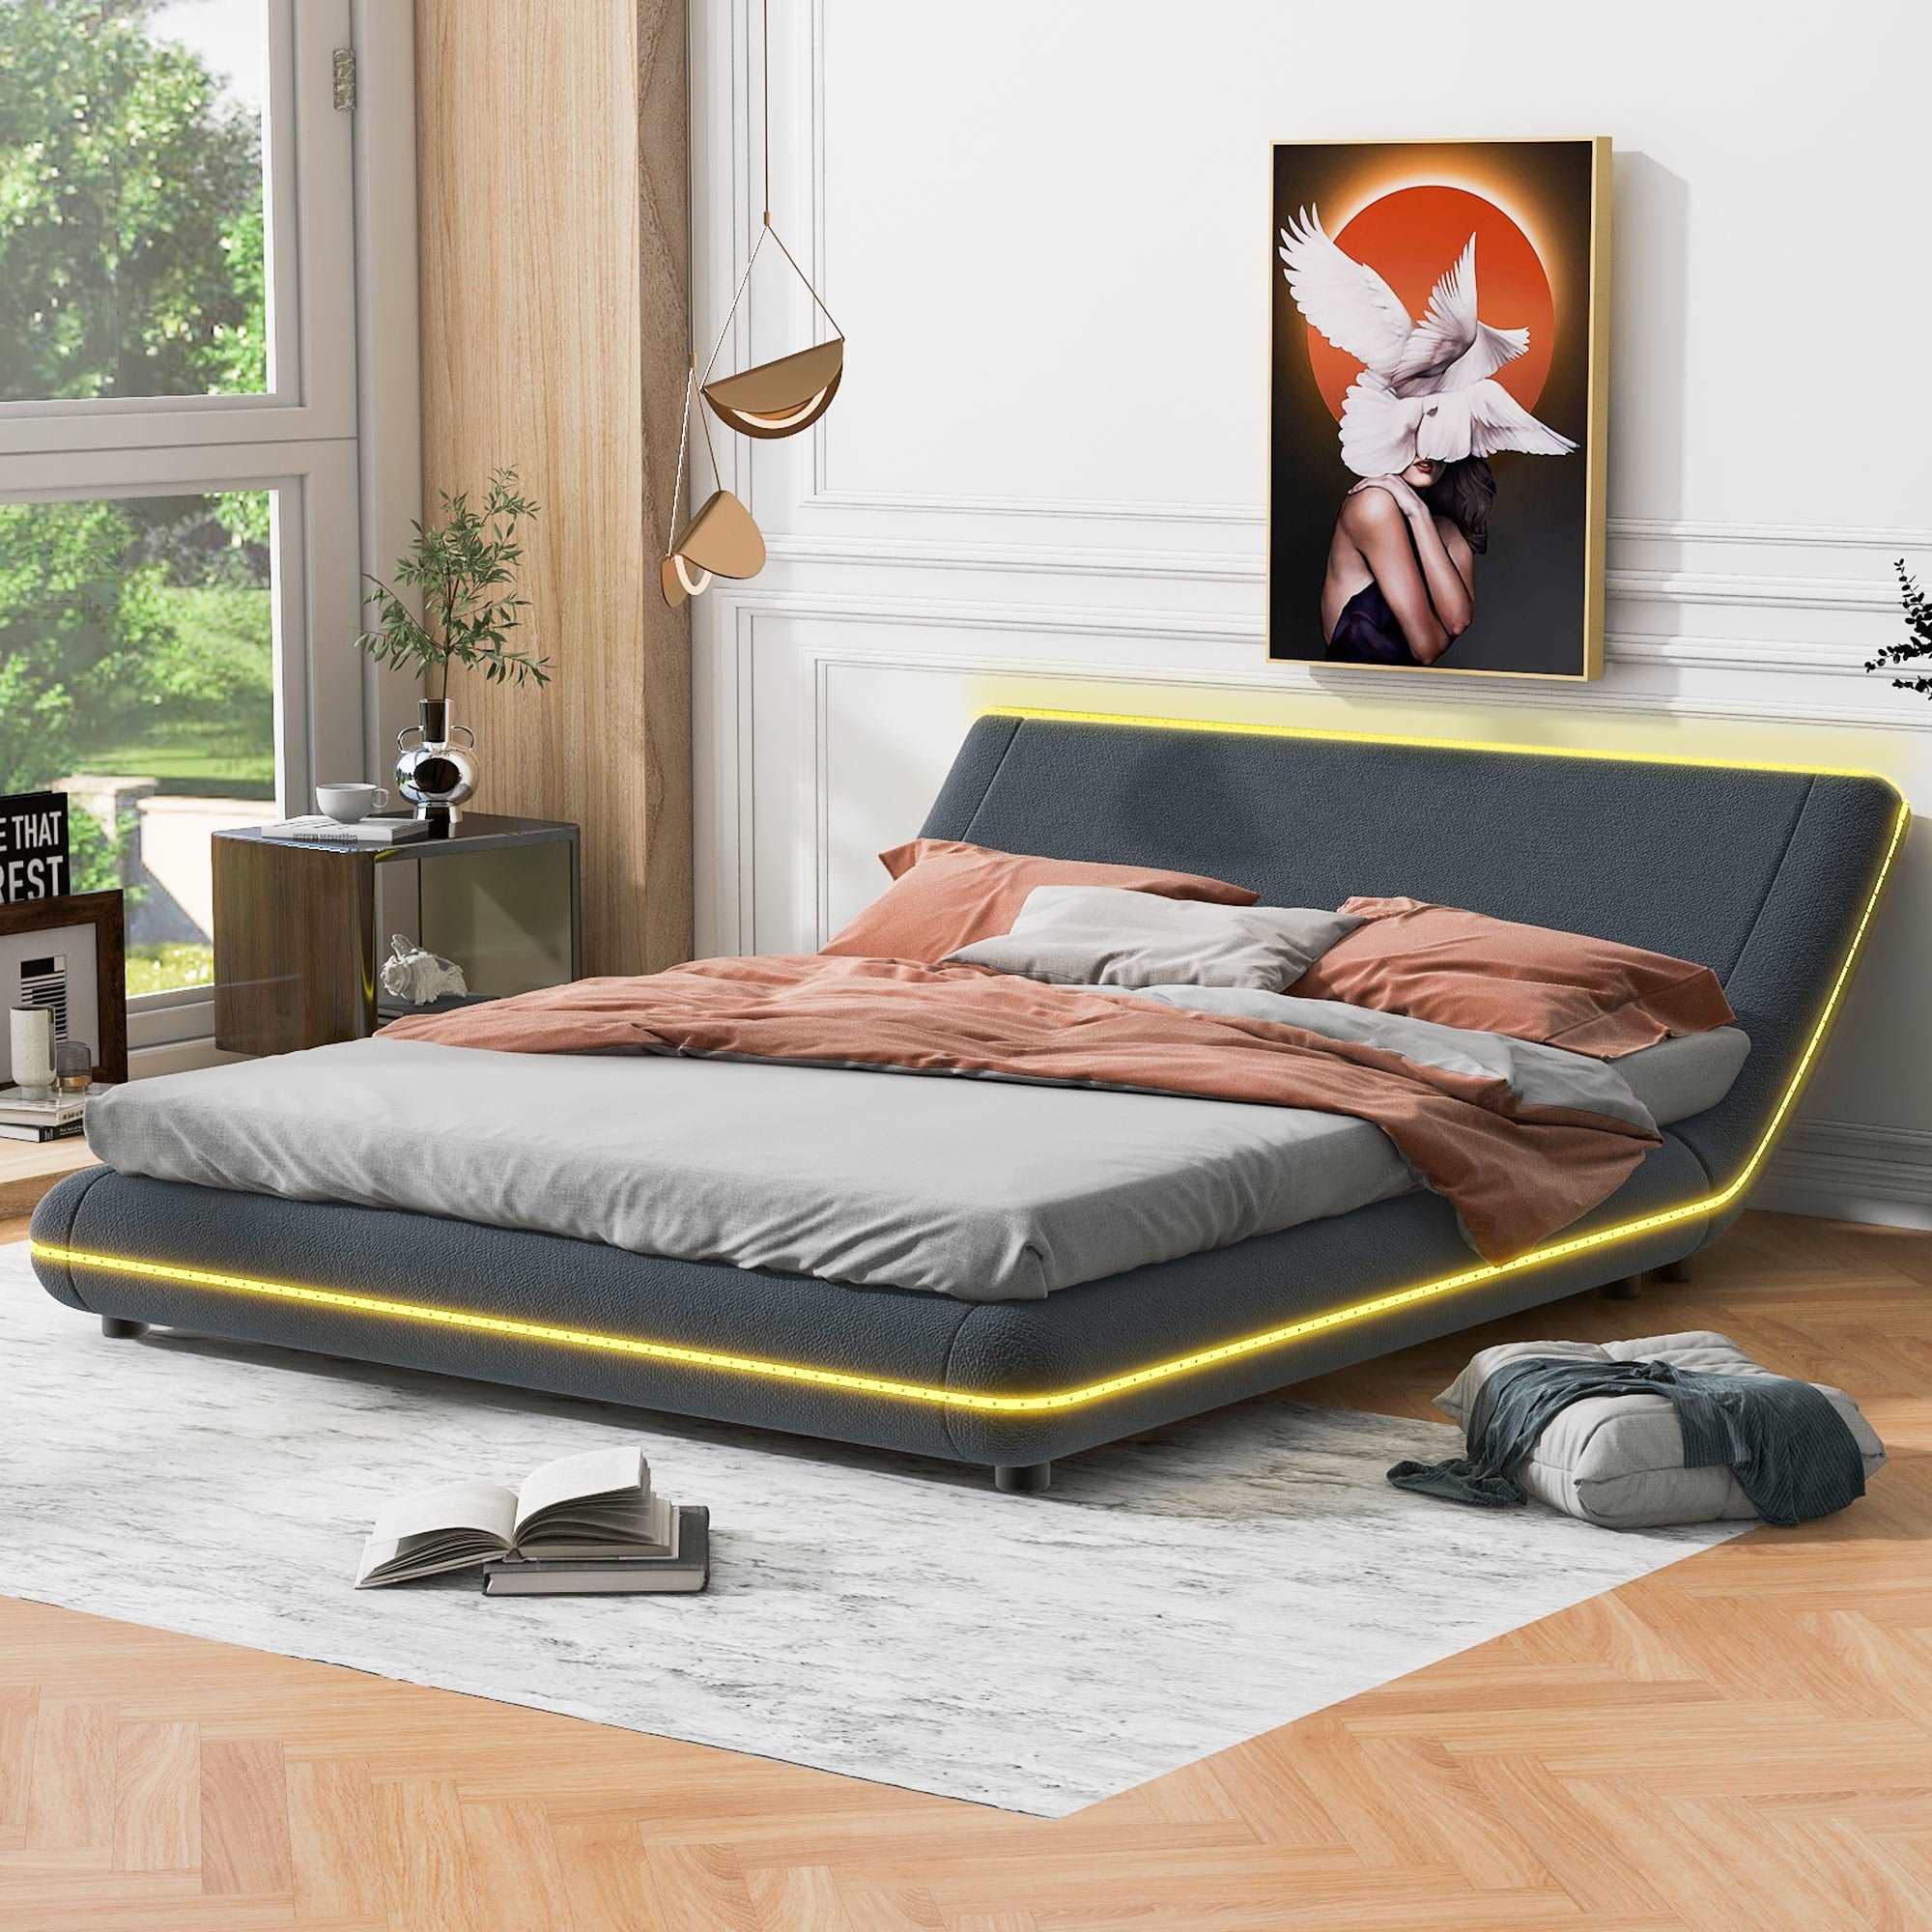 Bellemave Upholstery Platform Bed Frame with Sloped Headboard